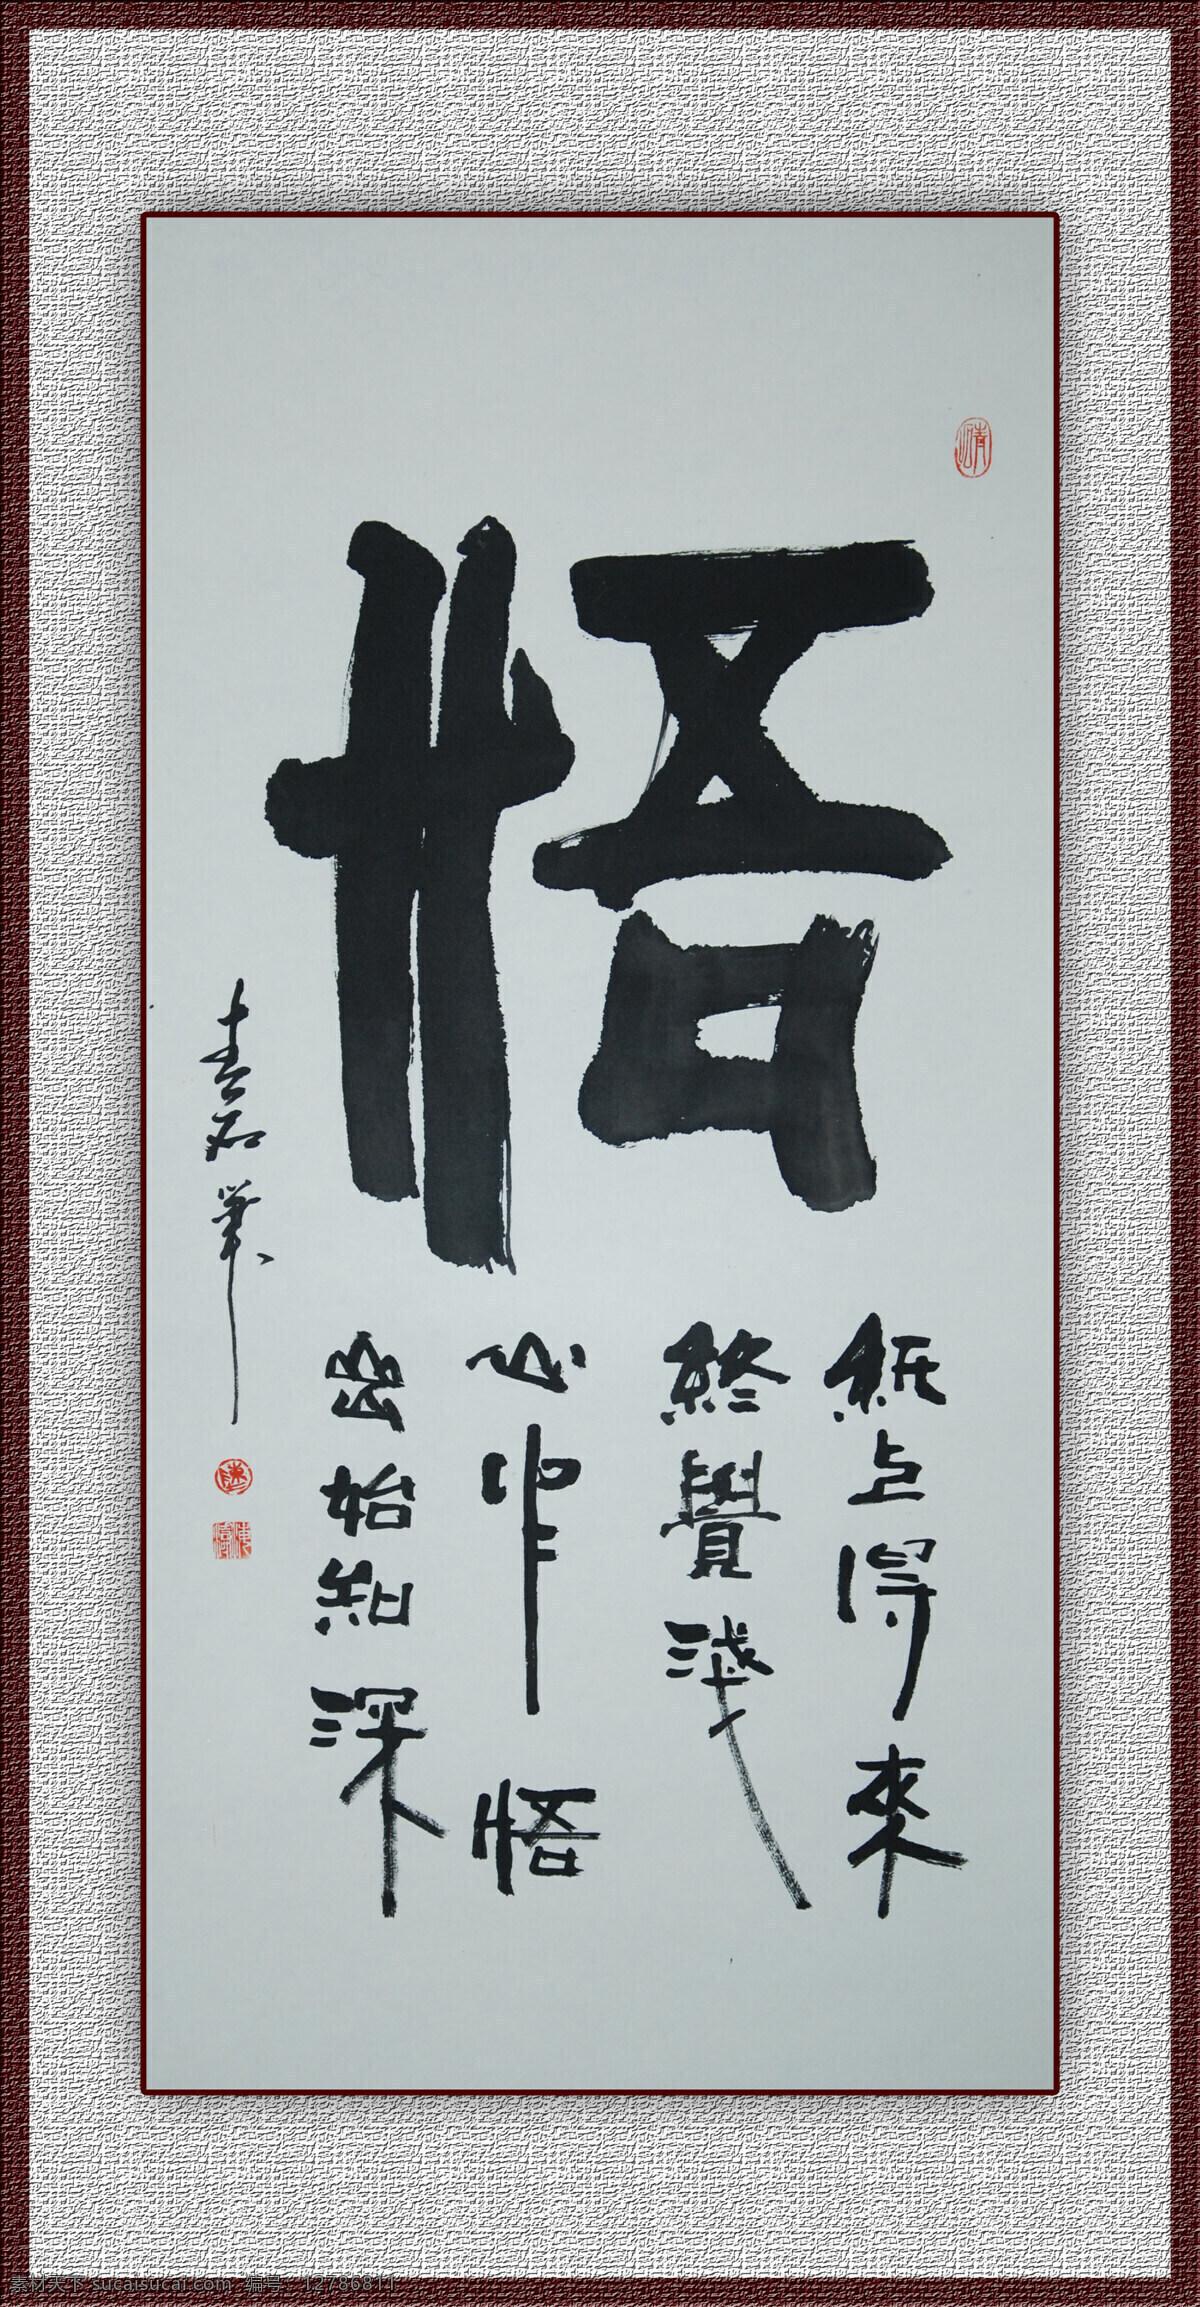 青石书法悟 青石书法 青石书画 书法 中国书法 悟 文化艺术 绘画书法